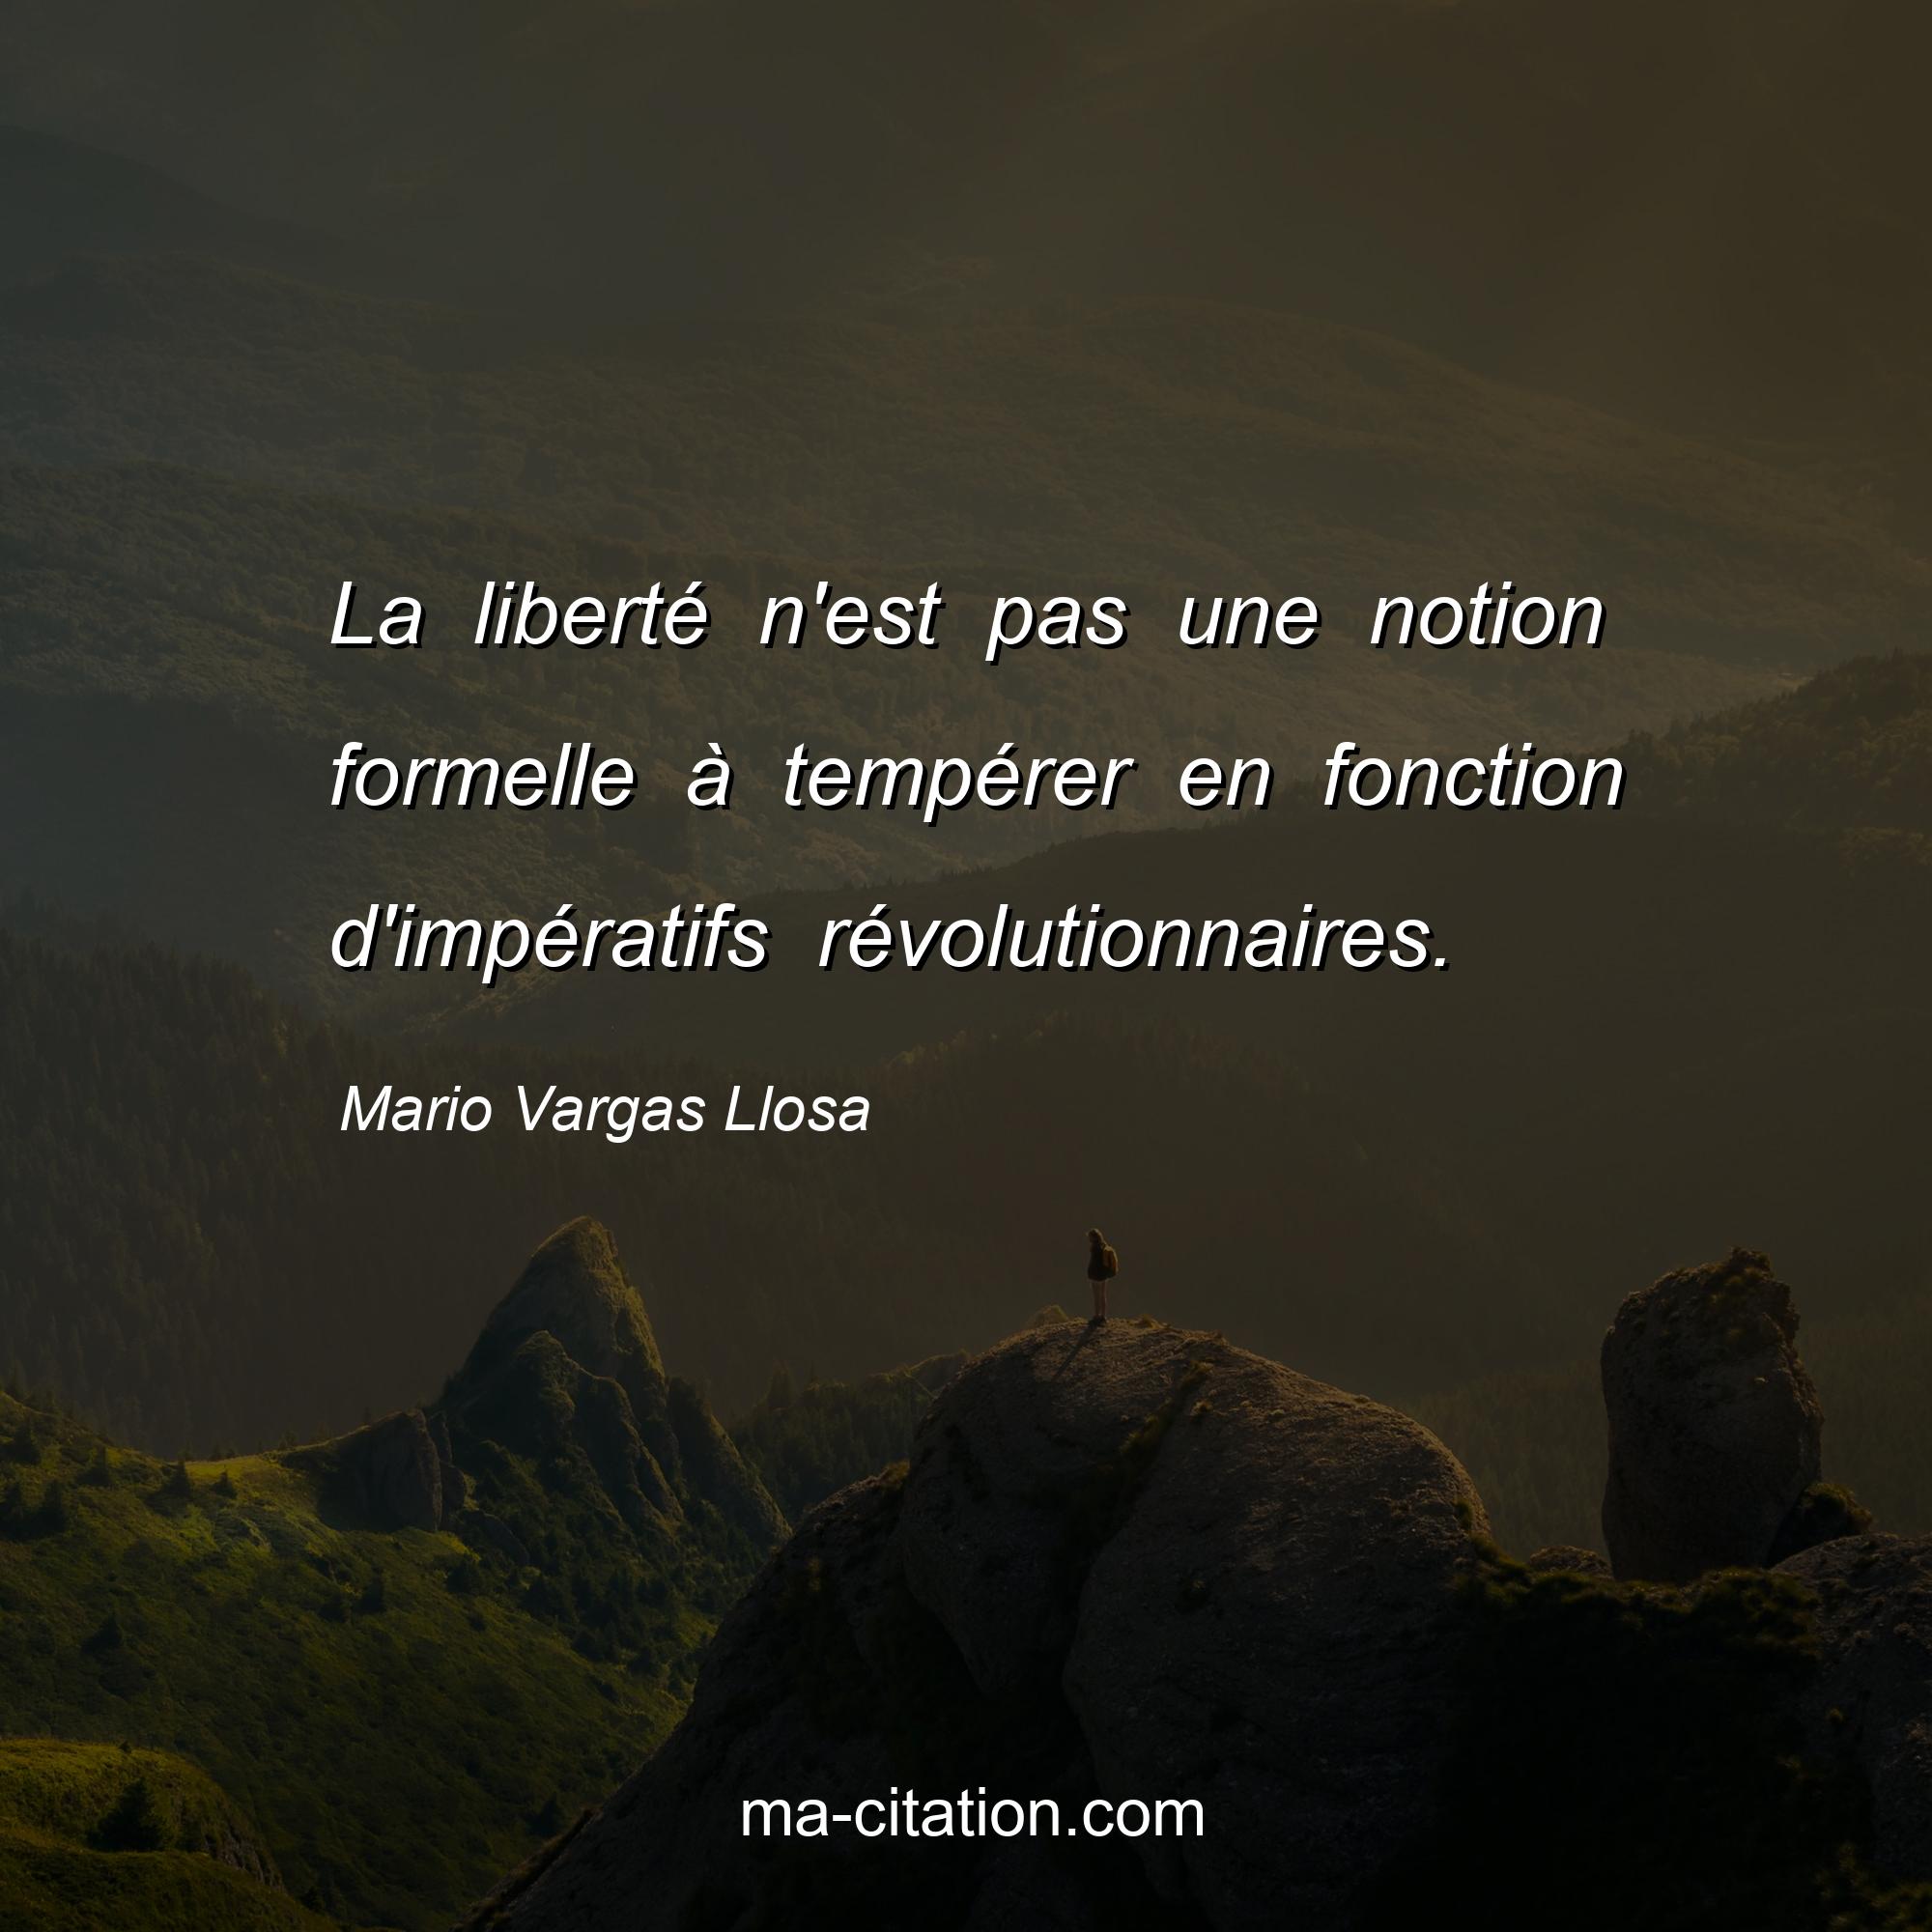 Mario Vargas Llosa : La liberté n'est pas une notion formelle à tempérer en fonction d'impératifs révolutionnaires.